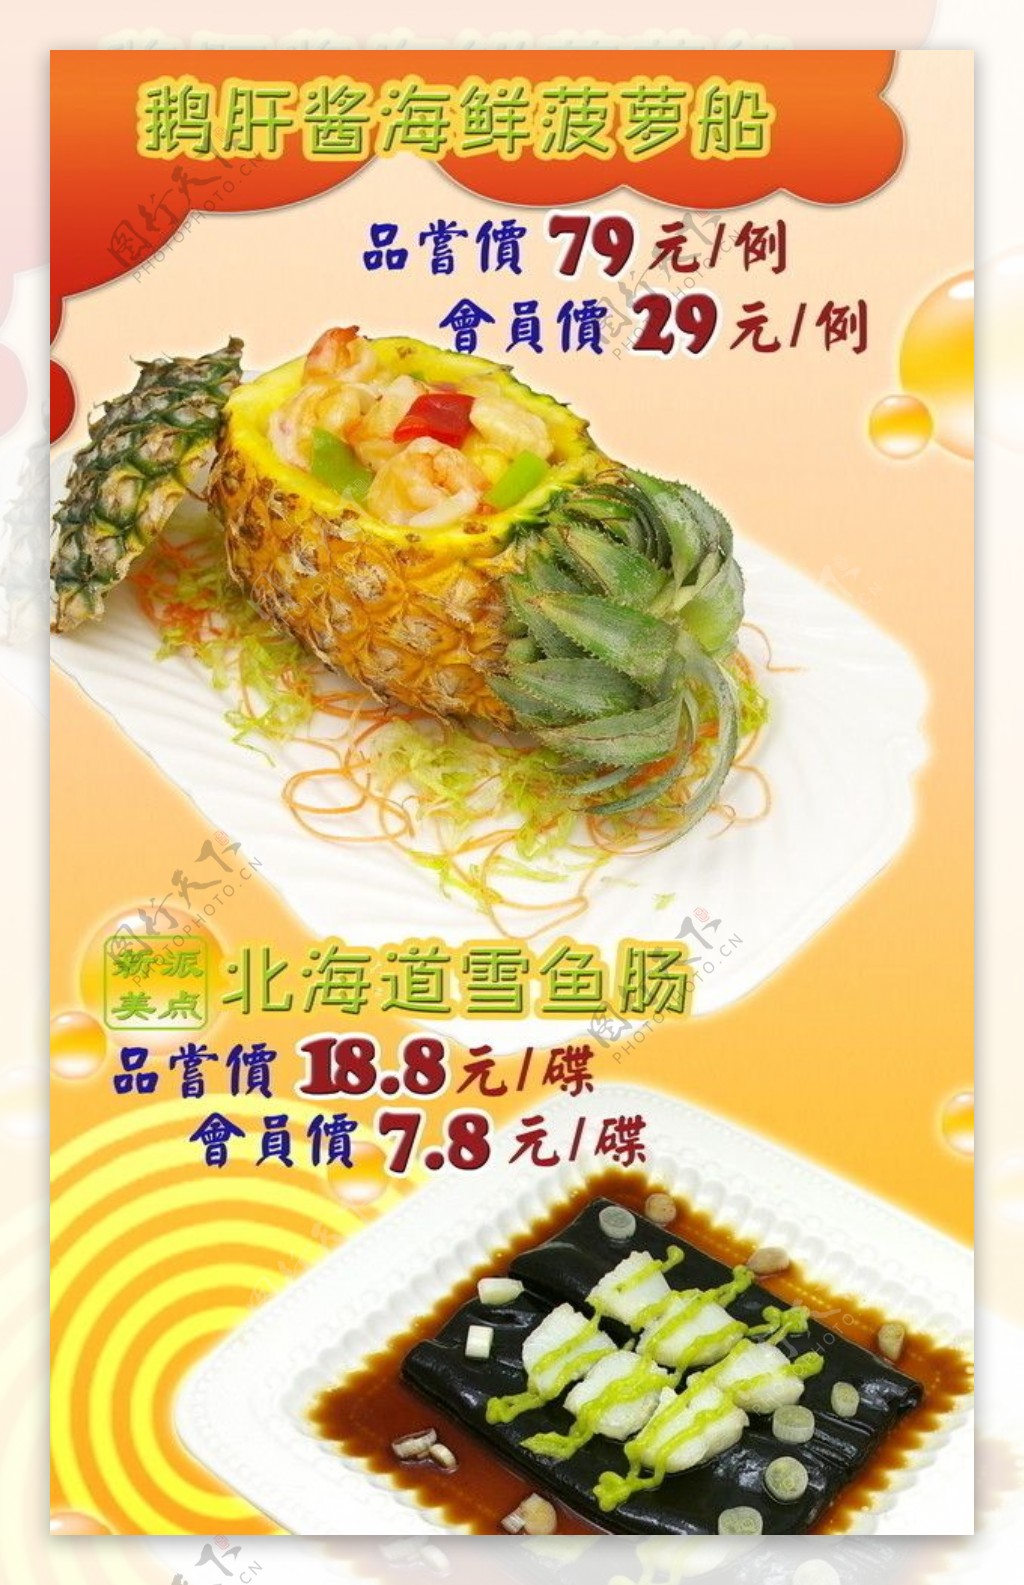 菠萝船雪鱼肠菜式宣传画图片